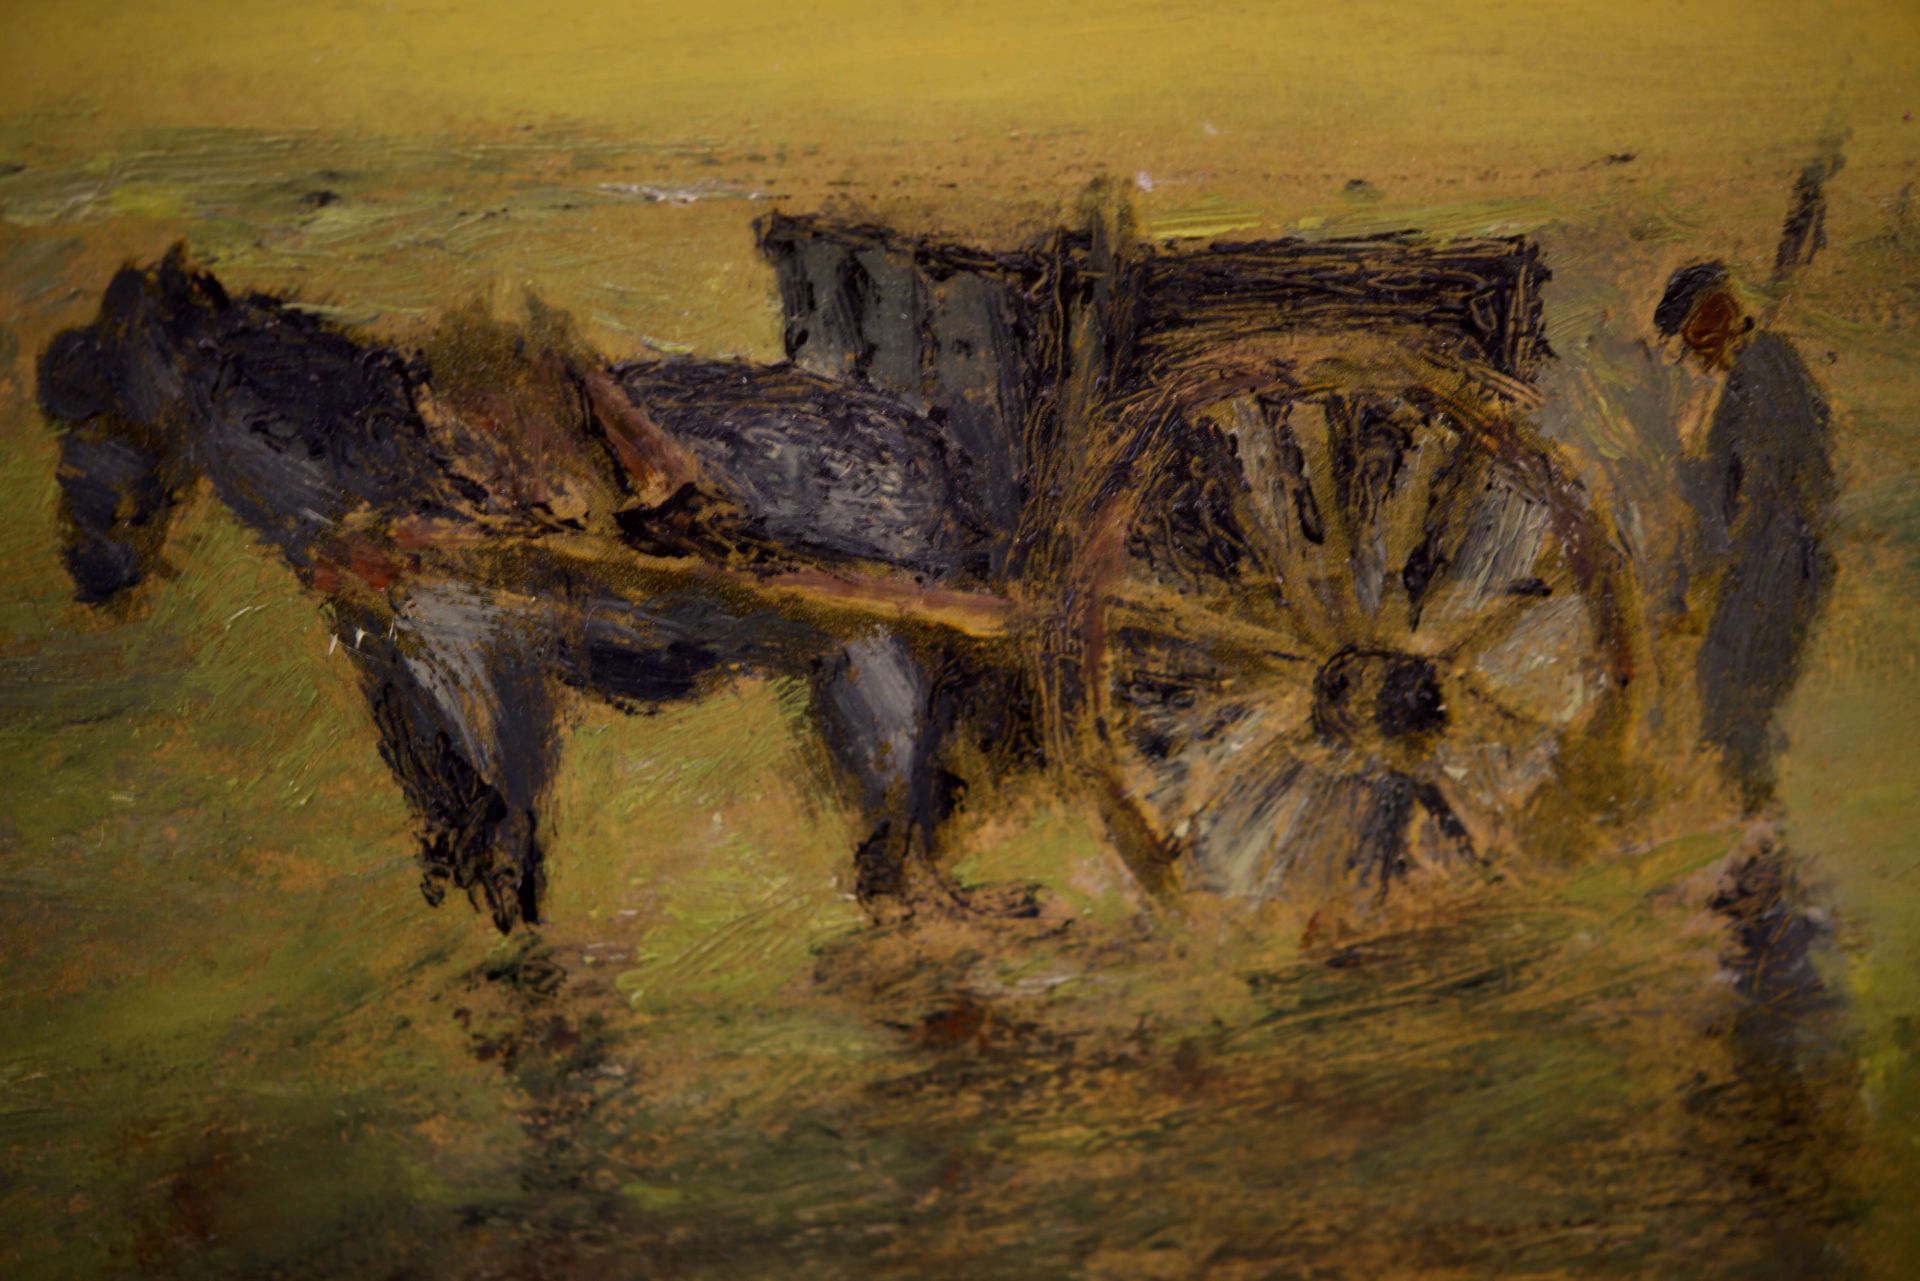 Muschelstecher mit Pferdefuhrwerken im Wasser an der Küste |Horse-drawn Carts in the Water on the Co - Image 5 of 5